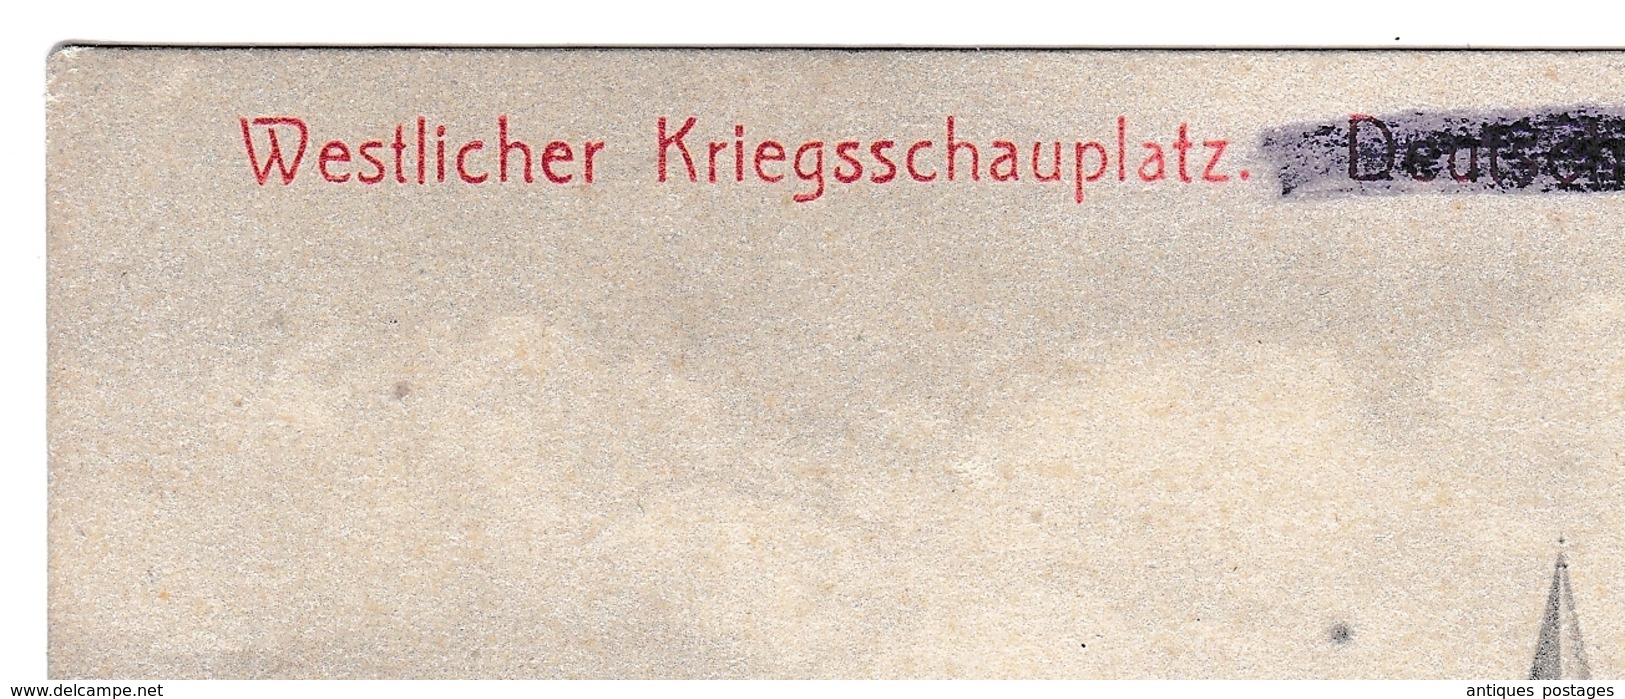 Postkarte Feldpost 1915 Deutschland WW1 Première Guerre Mondiale Westlicher Kriegschauplatz Deutsch-Avricourt Kolonie - Feldpost (franchigia Postale)